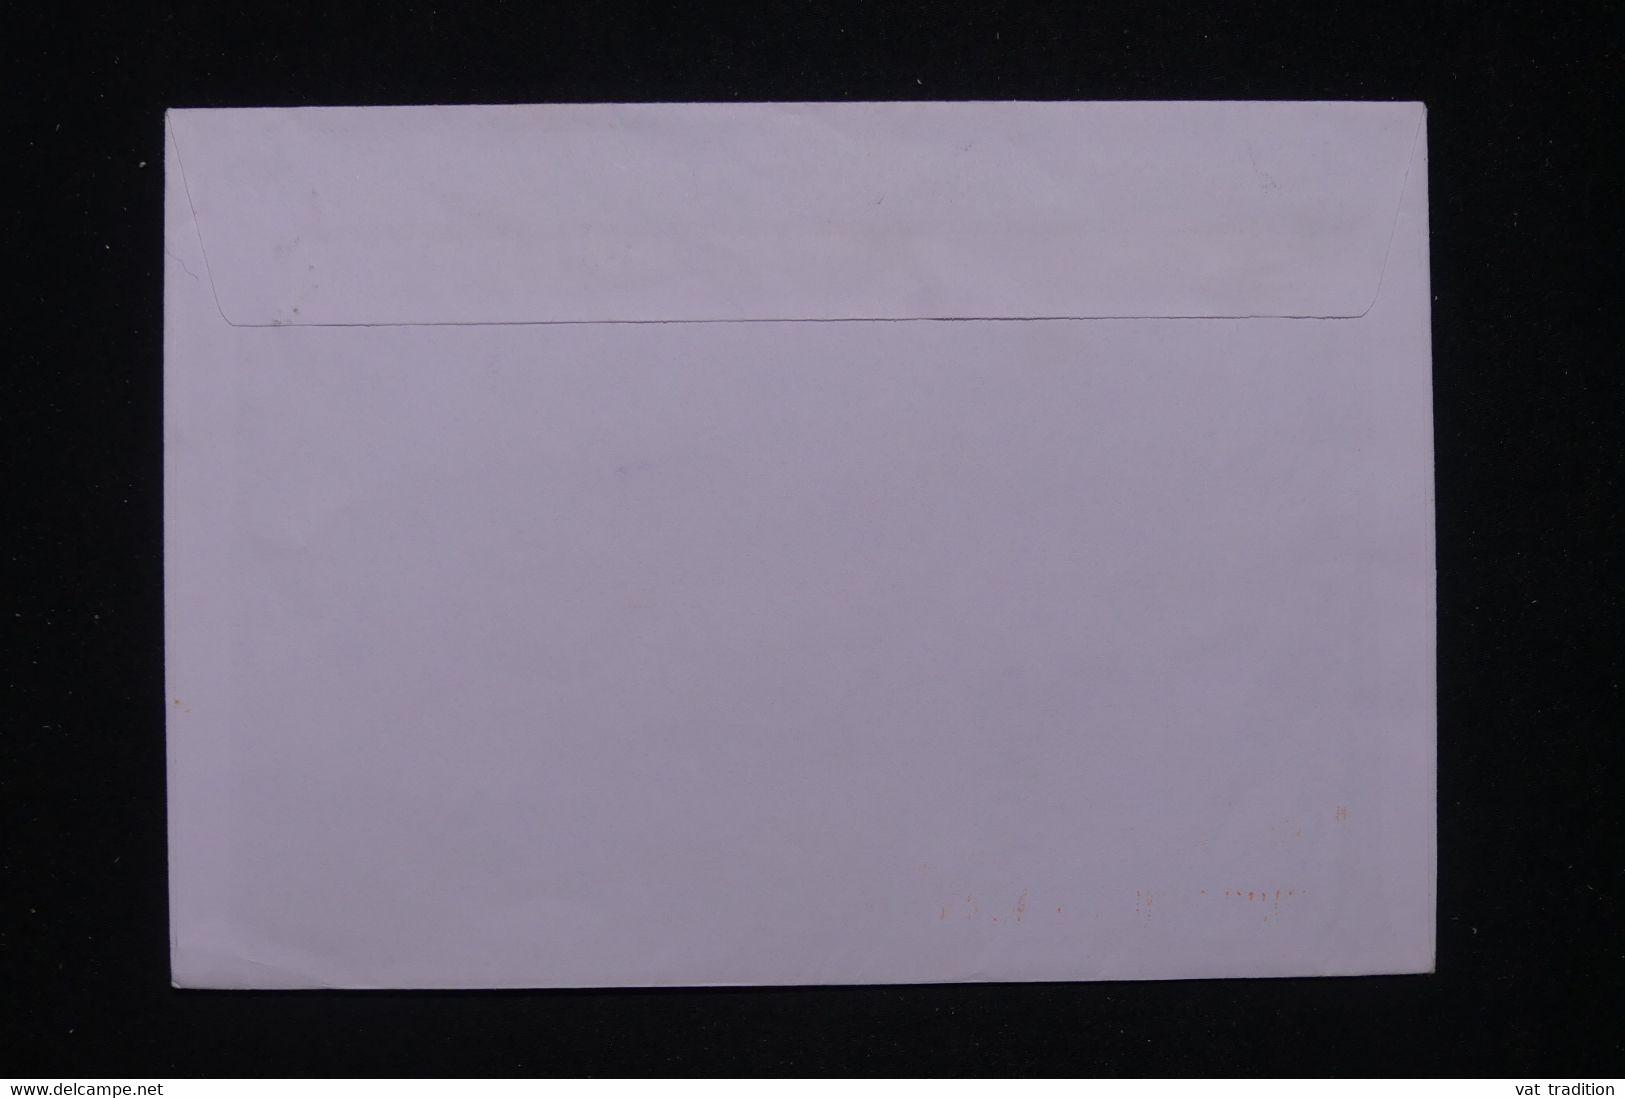 POLYNÉSIE - Enveloppe Du Collège De Mataura Tubuai Par Avion Pour La France En 2000 - L 97832 - Briefe U. Dokumente